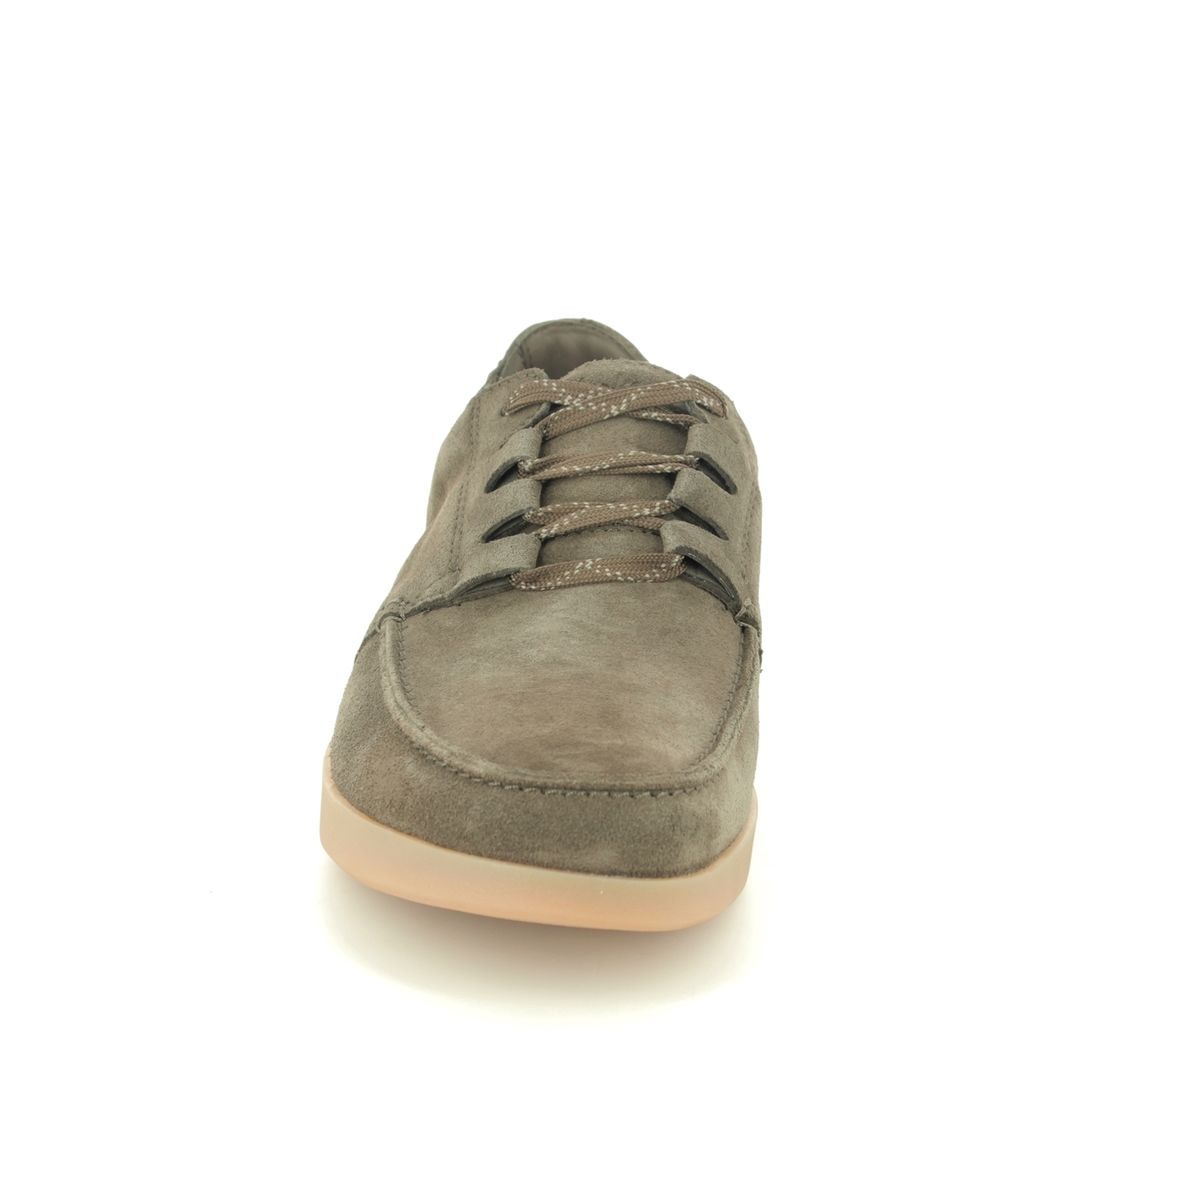 Clarks Oakland Walk Olive Green Mens comfort shoes 5406-57G